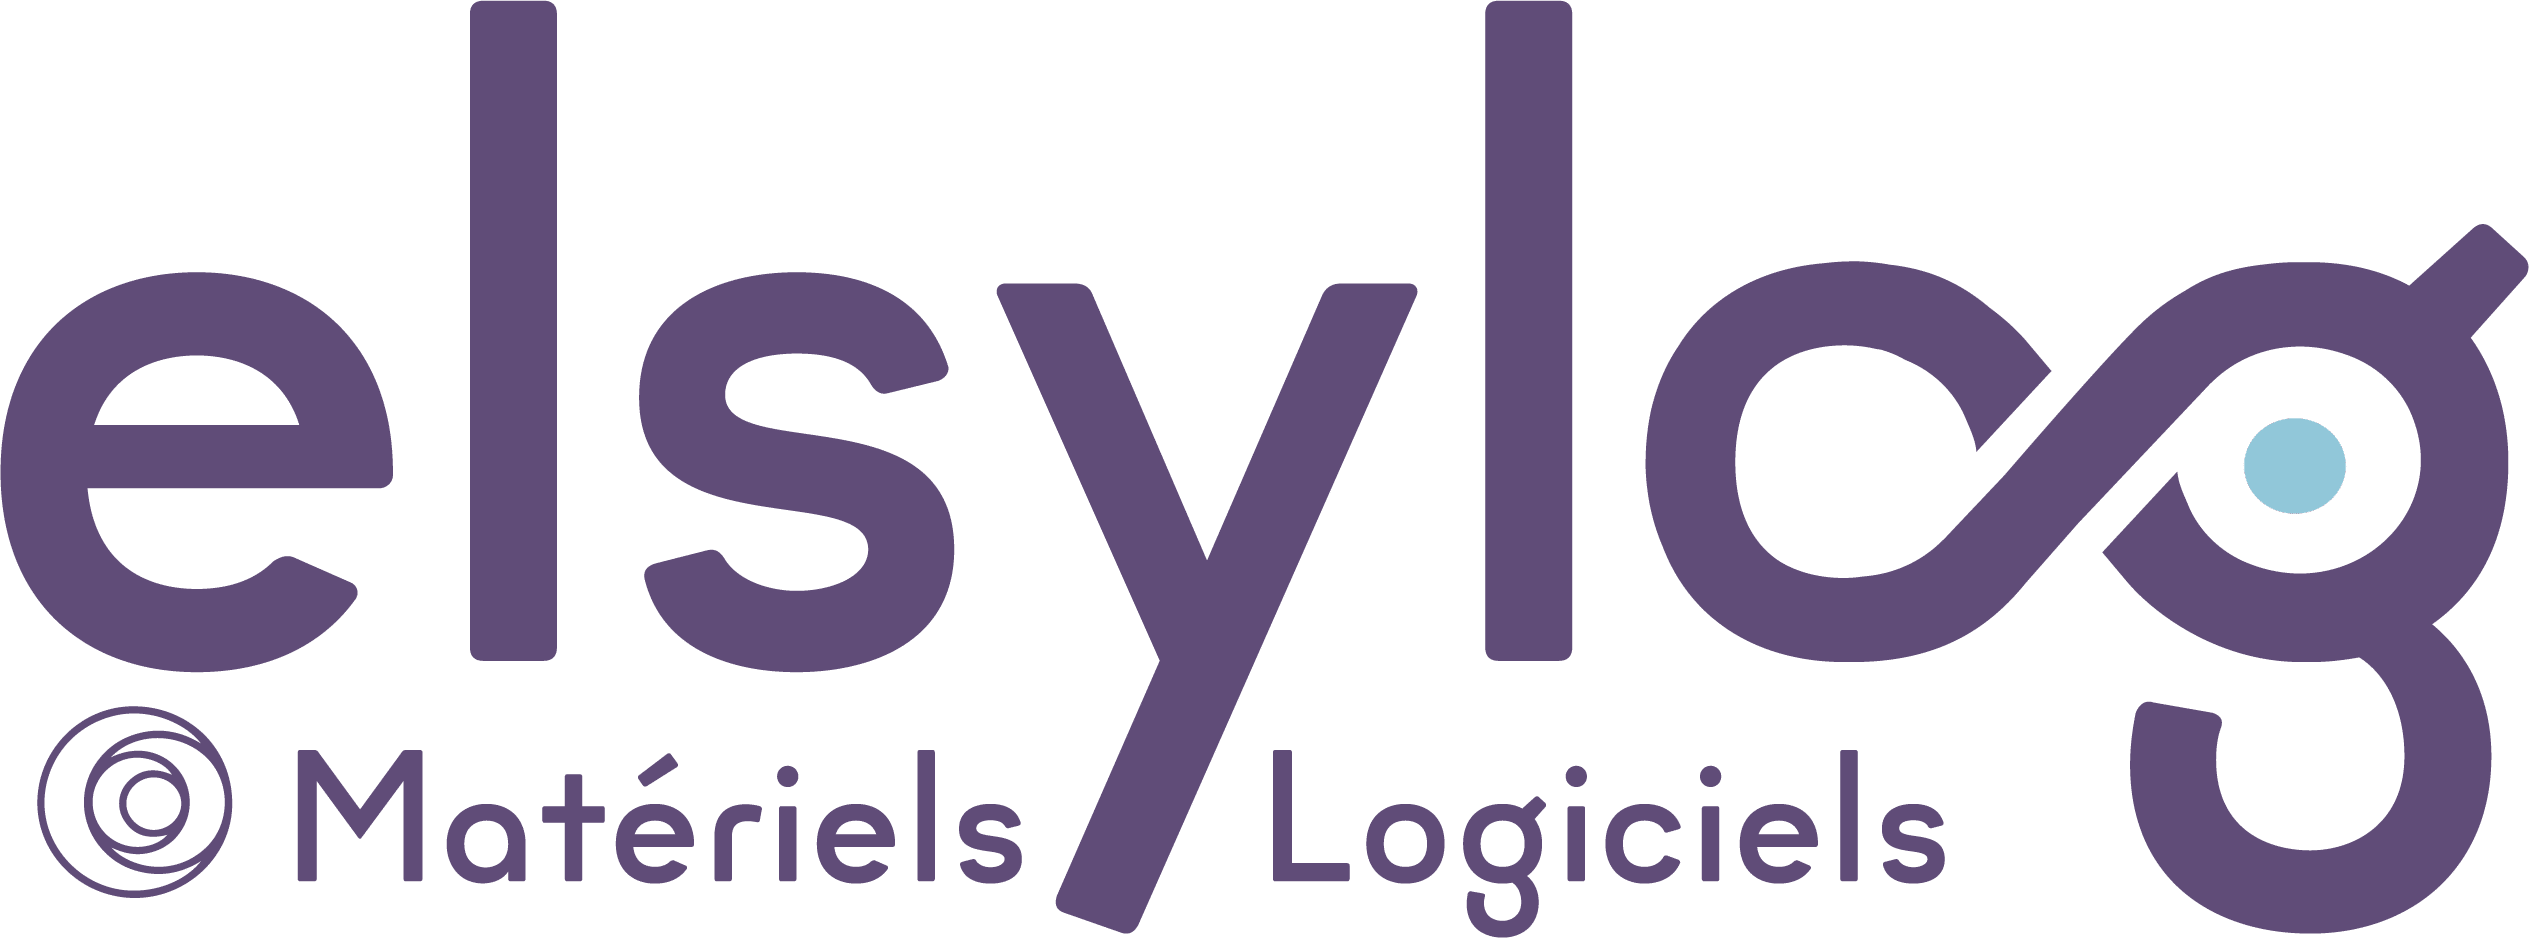 logo elsylog controle acces gestion temps activites entreprise